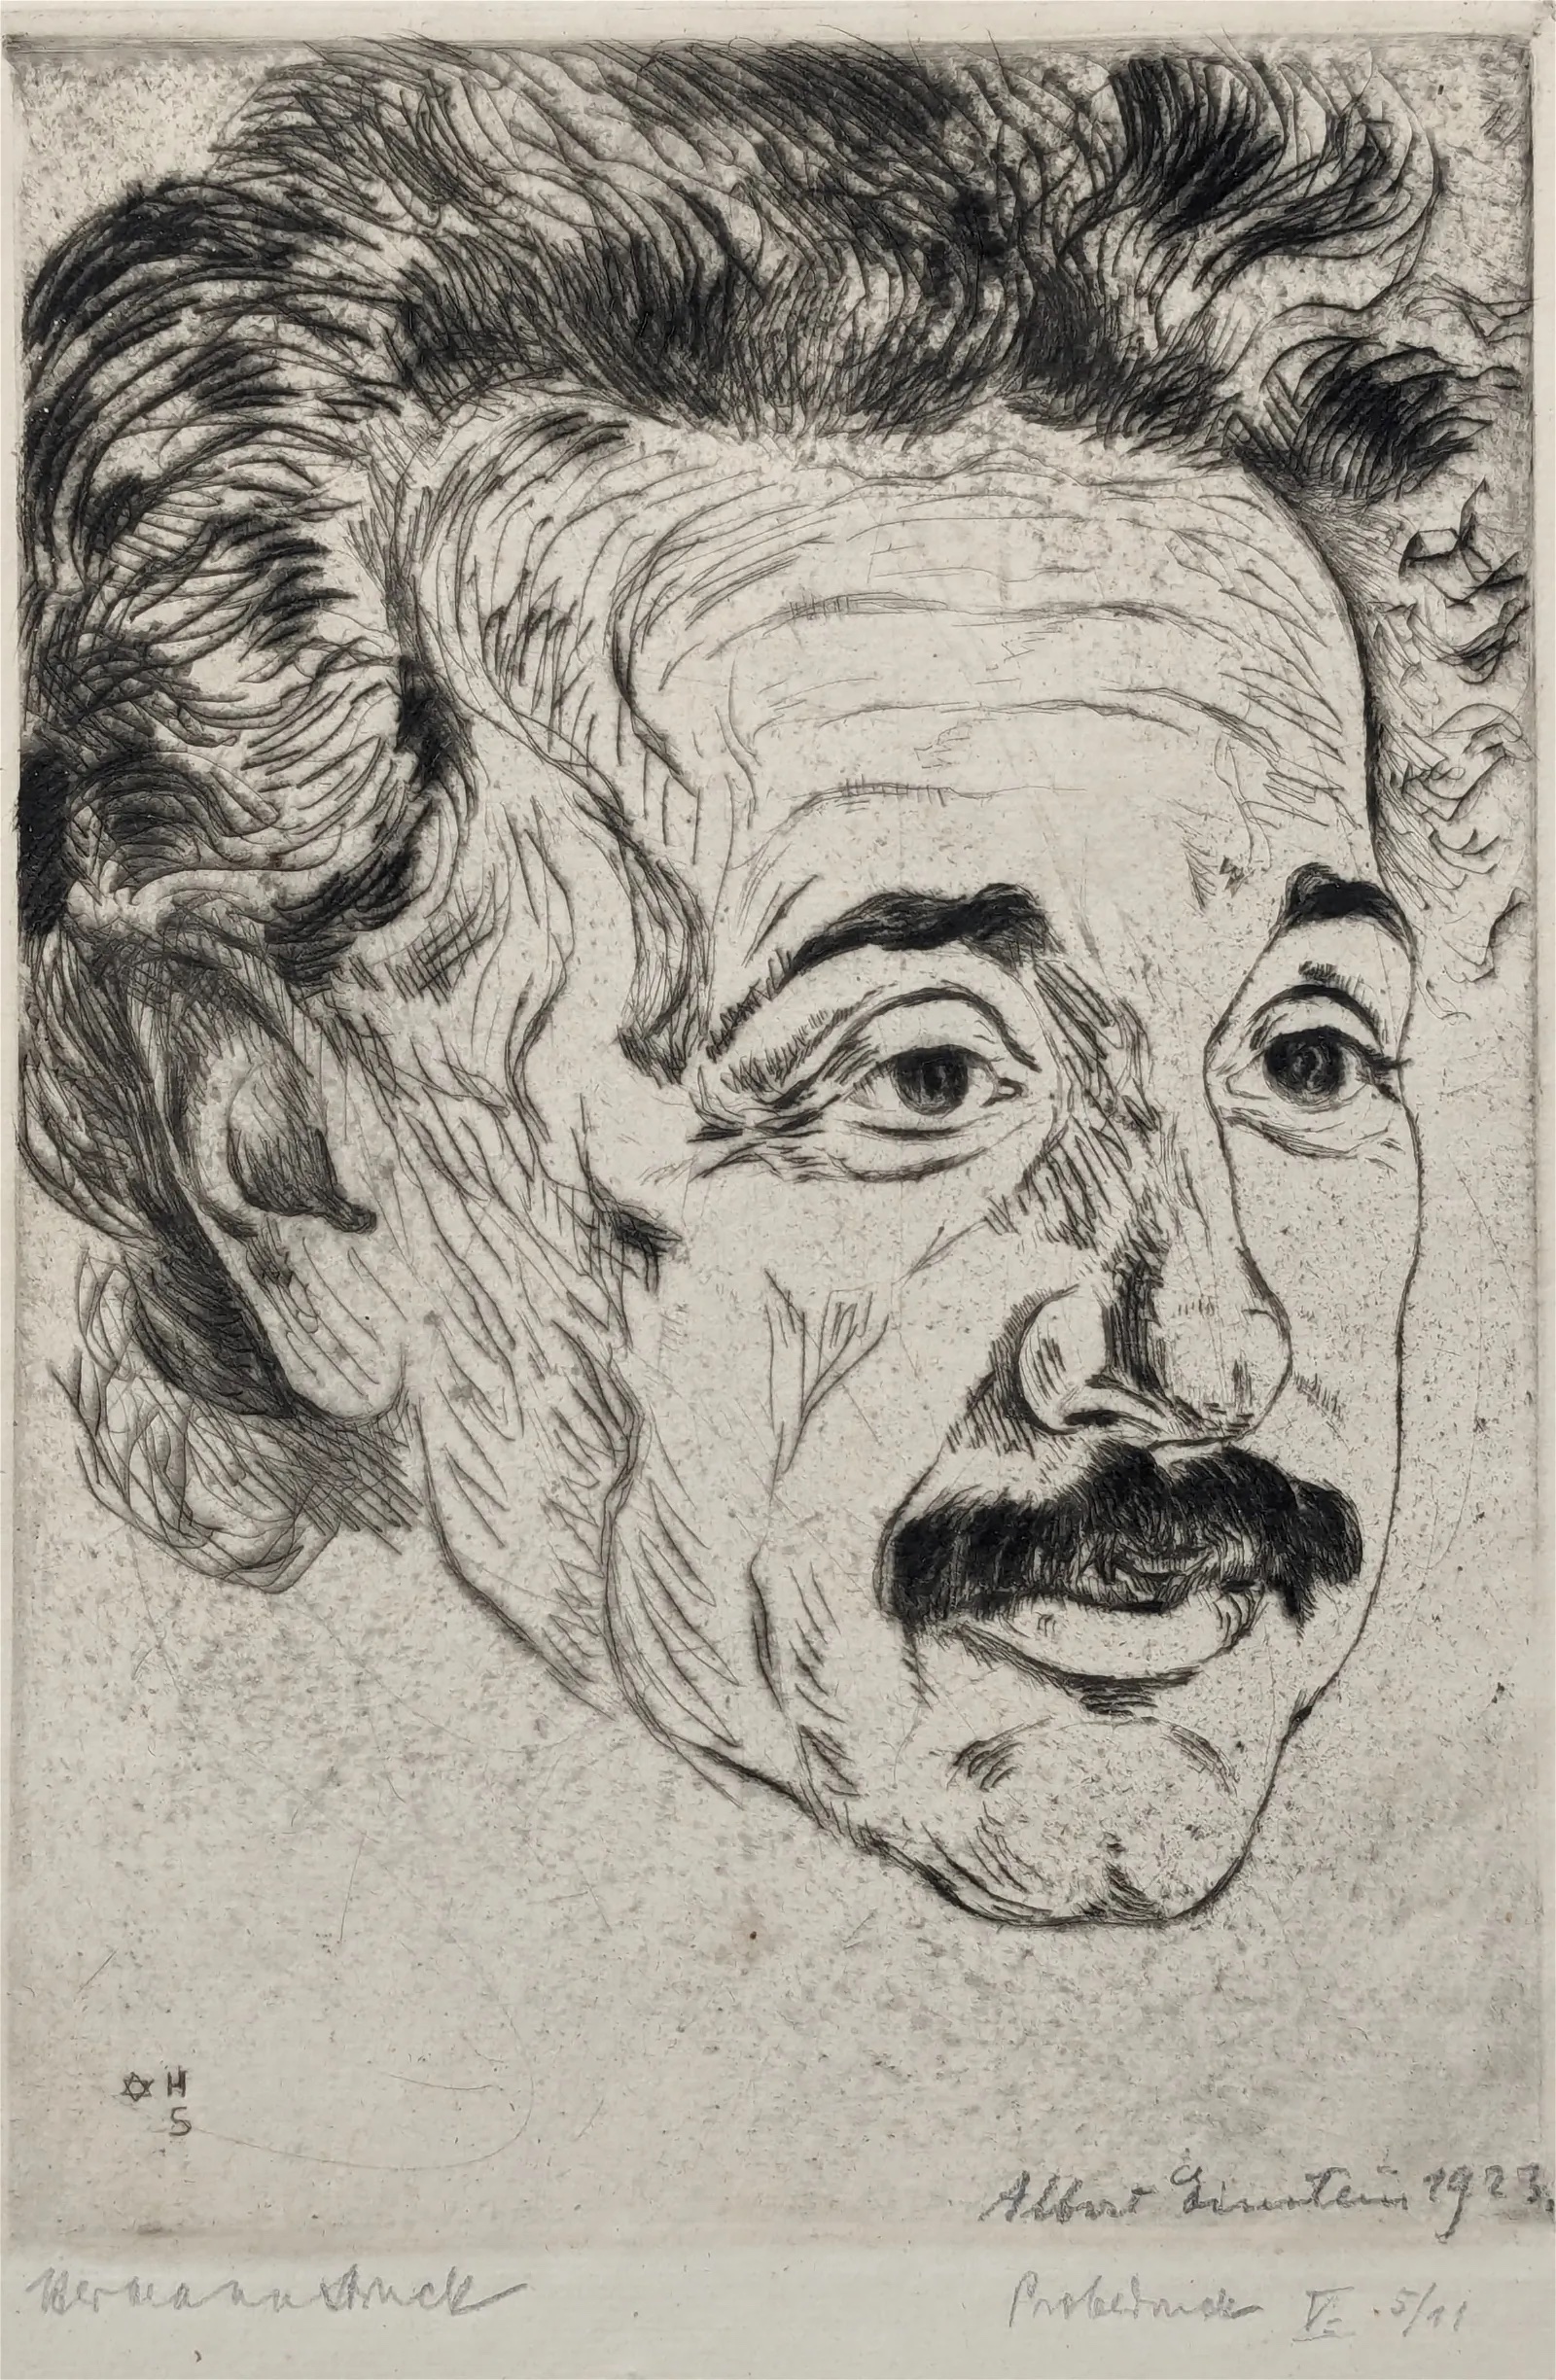 Hermann Struck, 'Albert Einstein', which sold for $4,600 ($5,842 with buyer’s premium) at Tremont.
